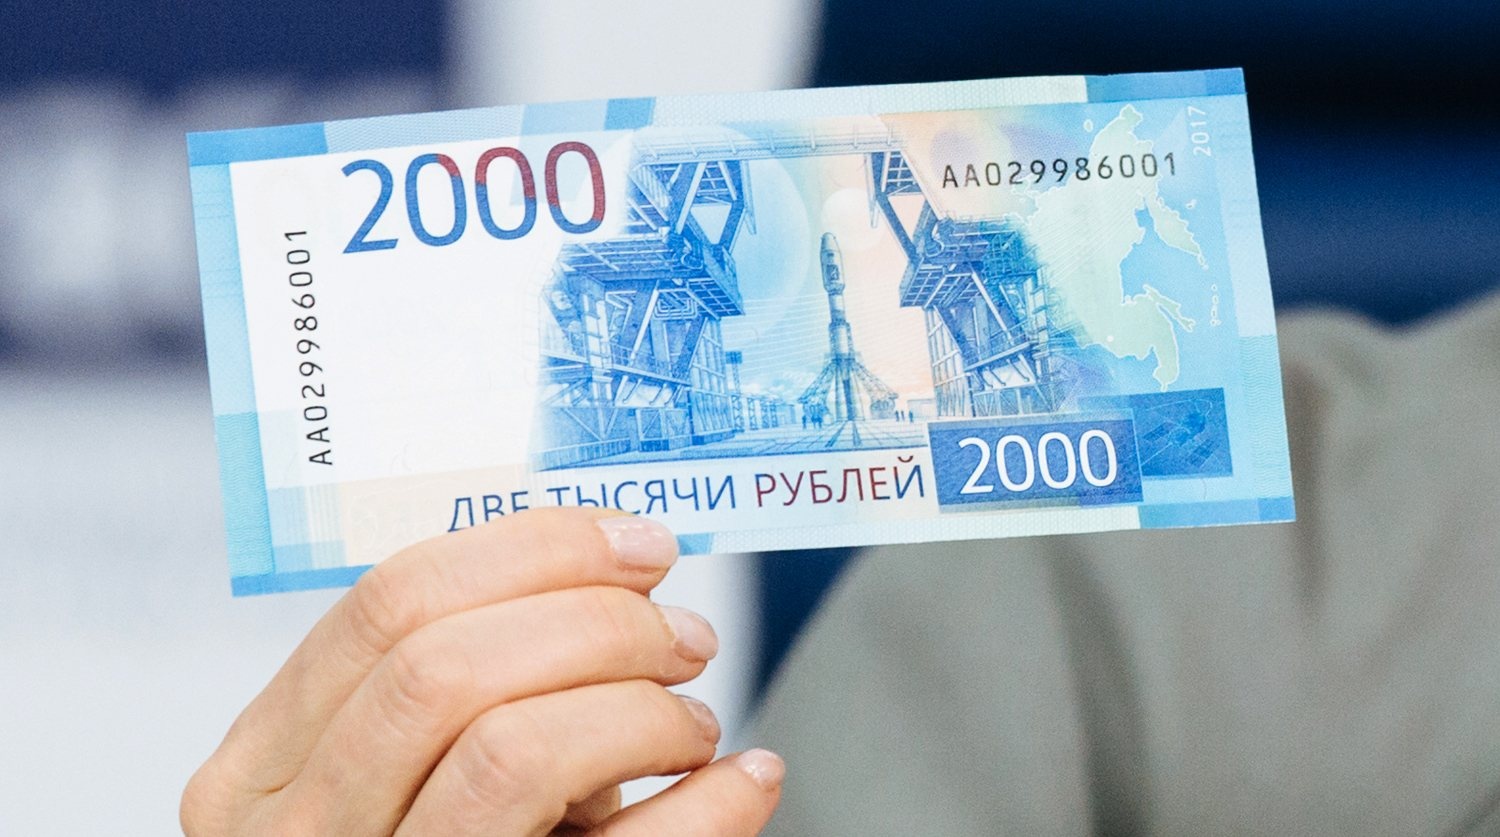 2000 рублей на карту. 2000 Рублей. Купюра 2000. 2000 Рублей банкнота. Купюра 2 тысячи рублей.